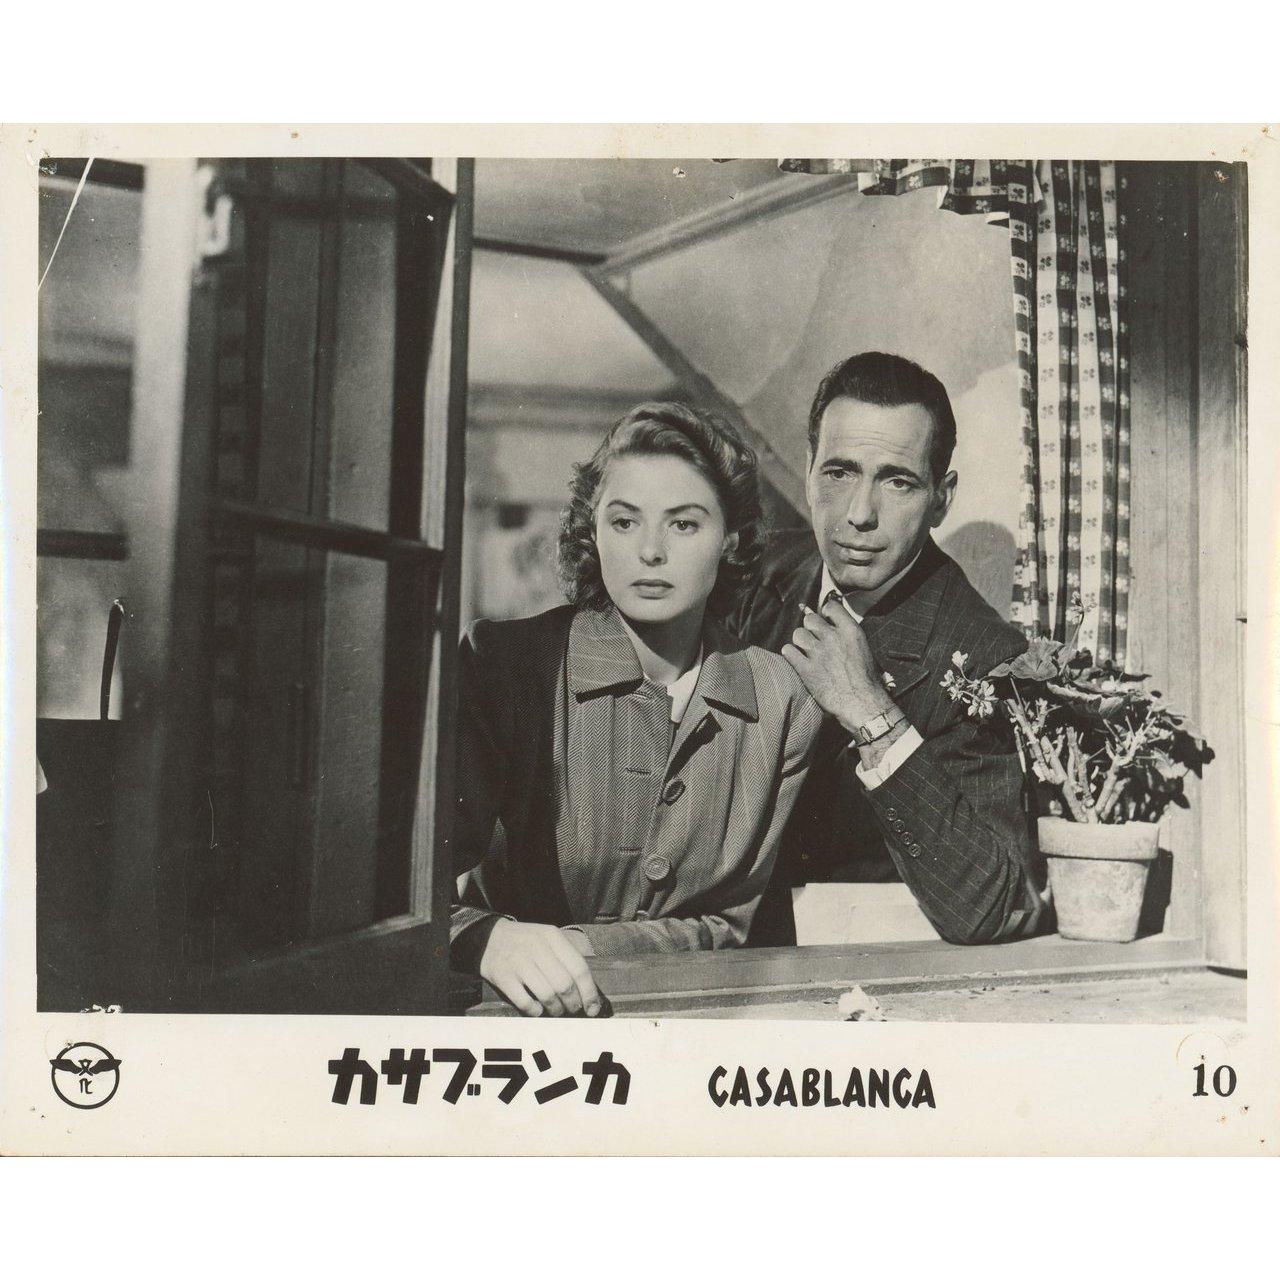 Originalfoto aus dem Jahr 1962 für den Film Casablanca von 1942 mit Humphrey Bogart / Ingrid Bergman / Paul Henreid / Claude Rains unter der Regie von Michael Curtiz in einer Neuauflage in japanischer Silbergelatine. Sehr guter Zustand, Nadellöcher.